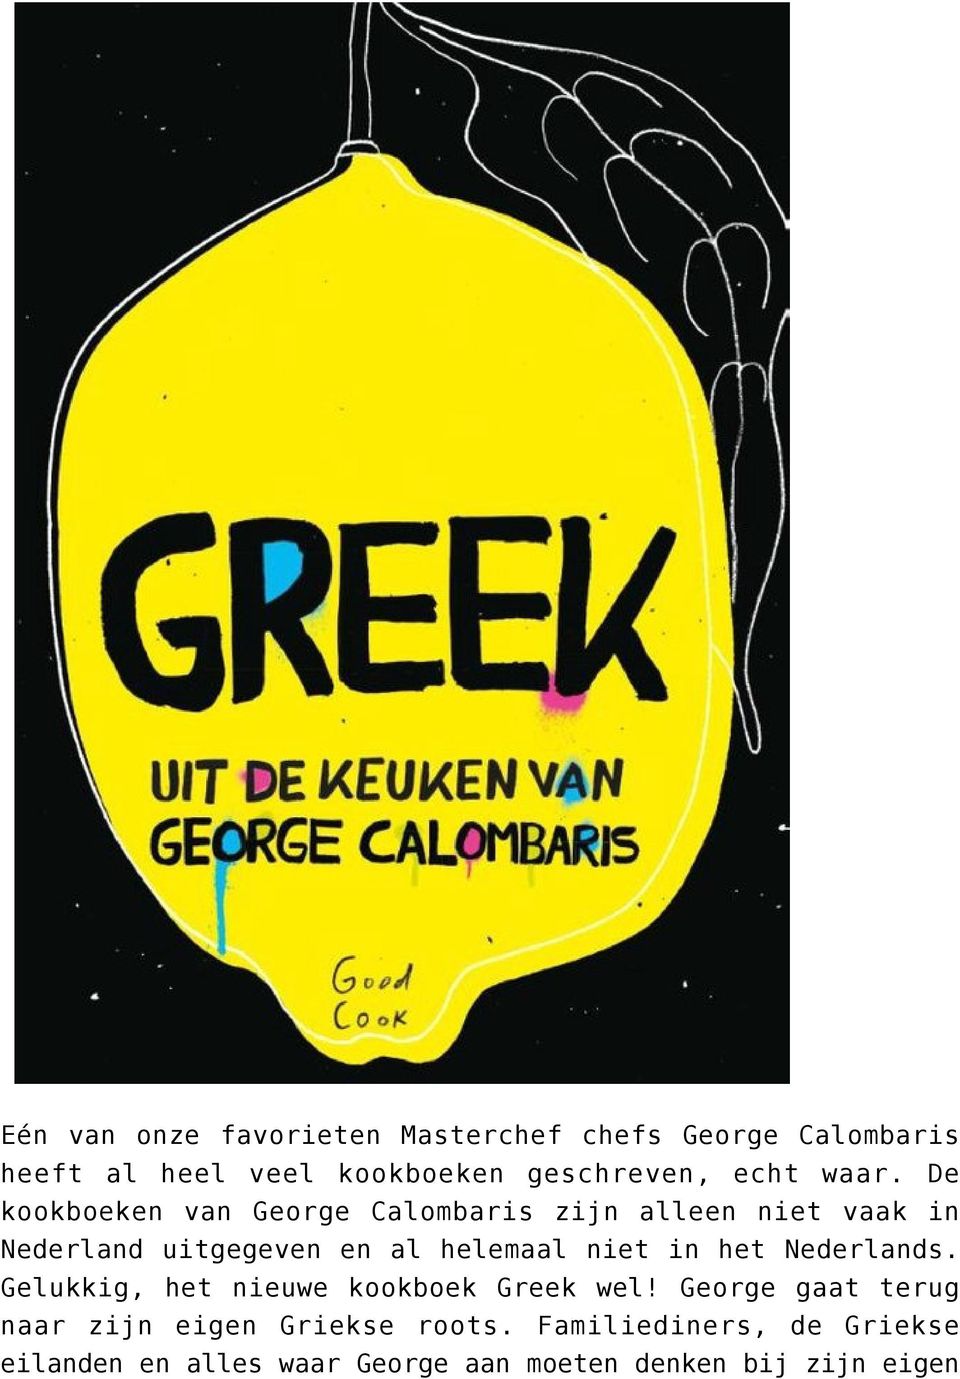 De kookboeken van George Calombaris zijn alleen niet vaak in Nederland uitgegeven en al helemaal niet